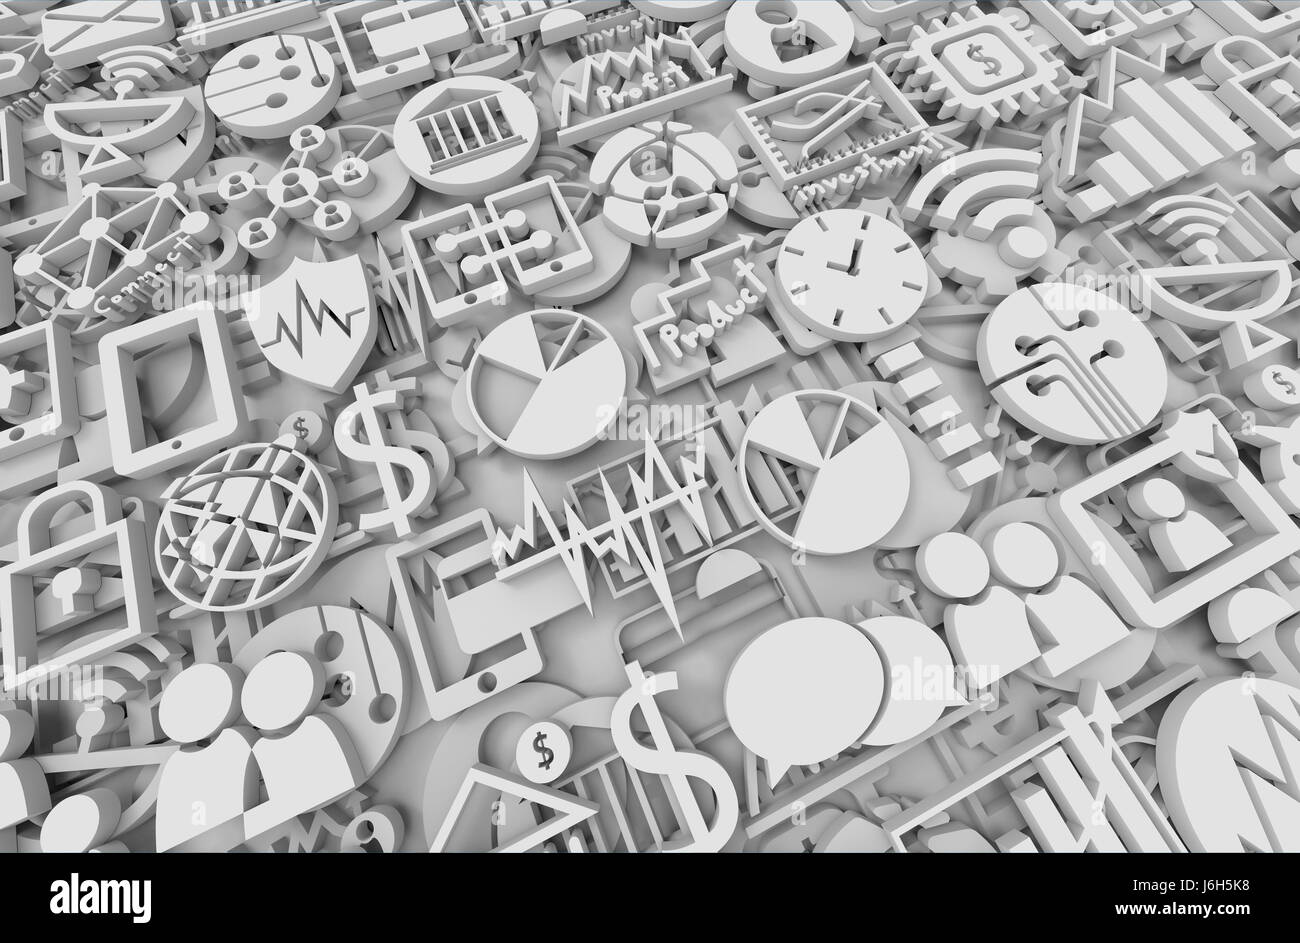 Illustration 3D , la technologie de l'Internet financier Investissement Fintech. icon Concept abstract background Banque D'Images